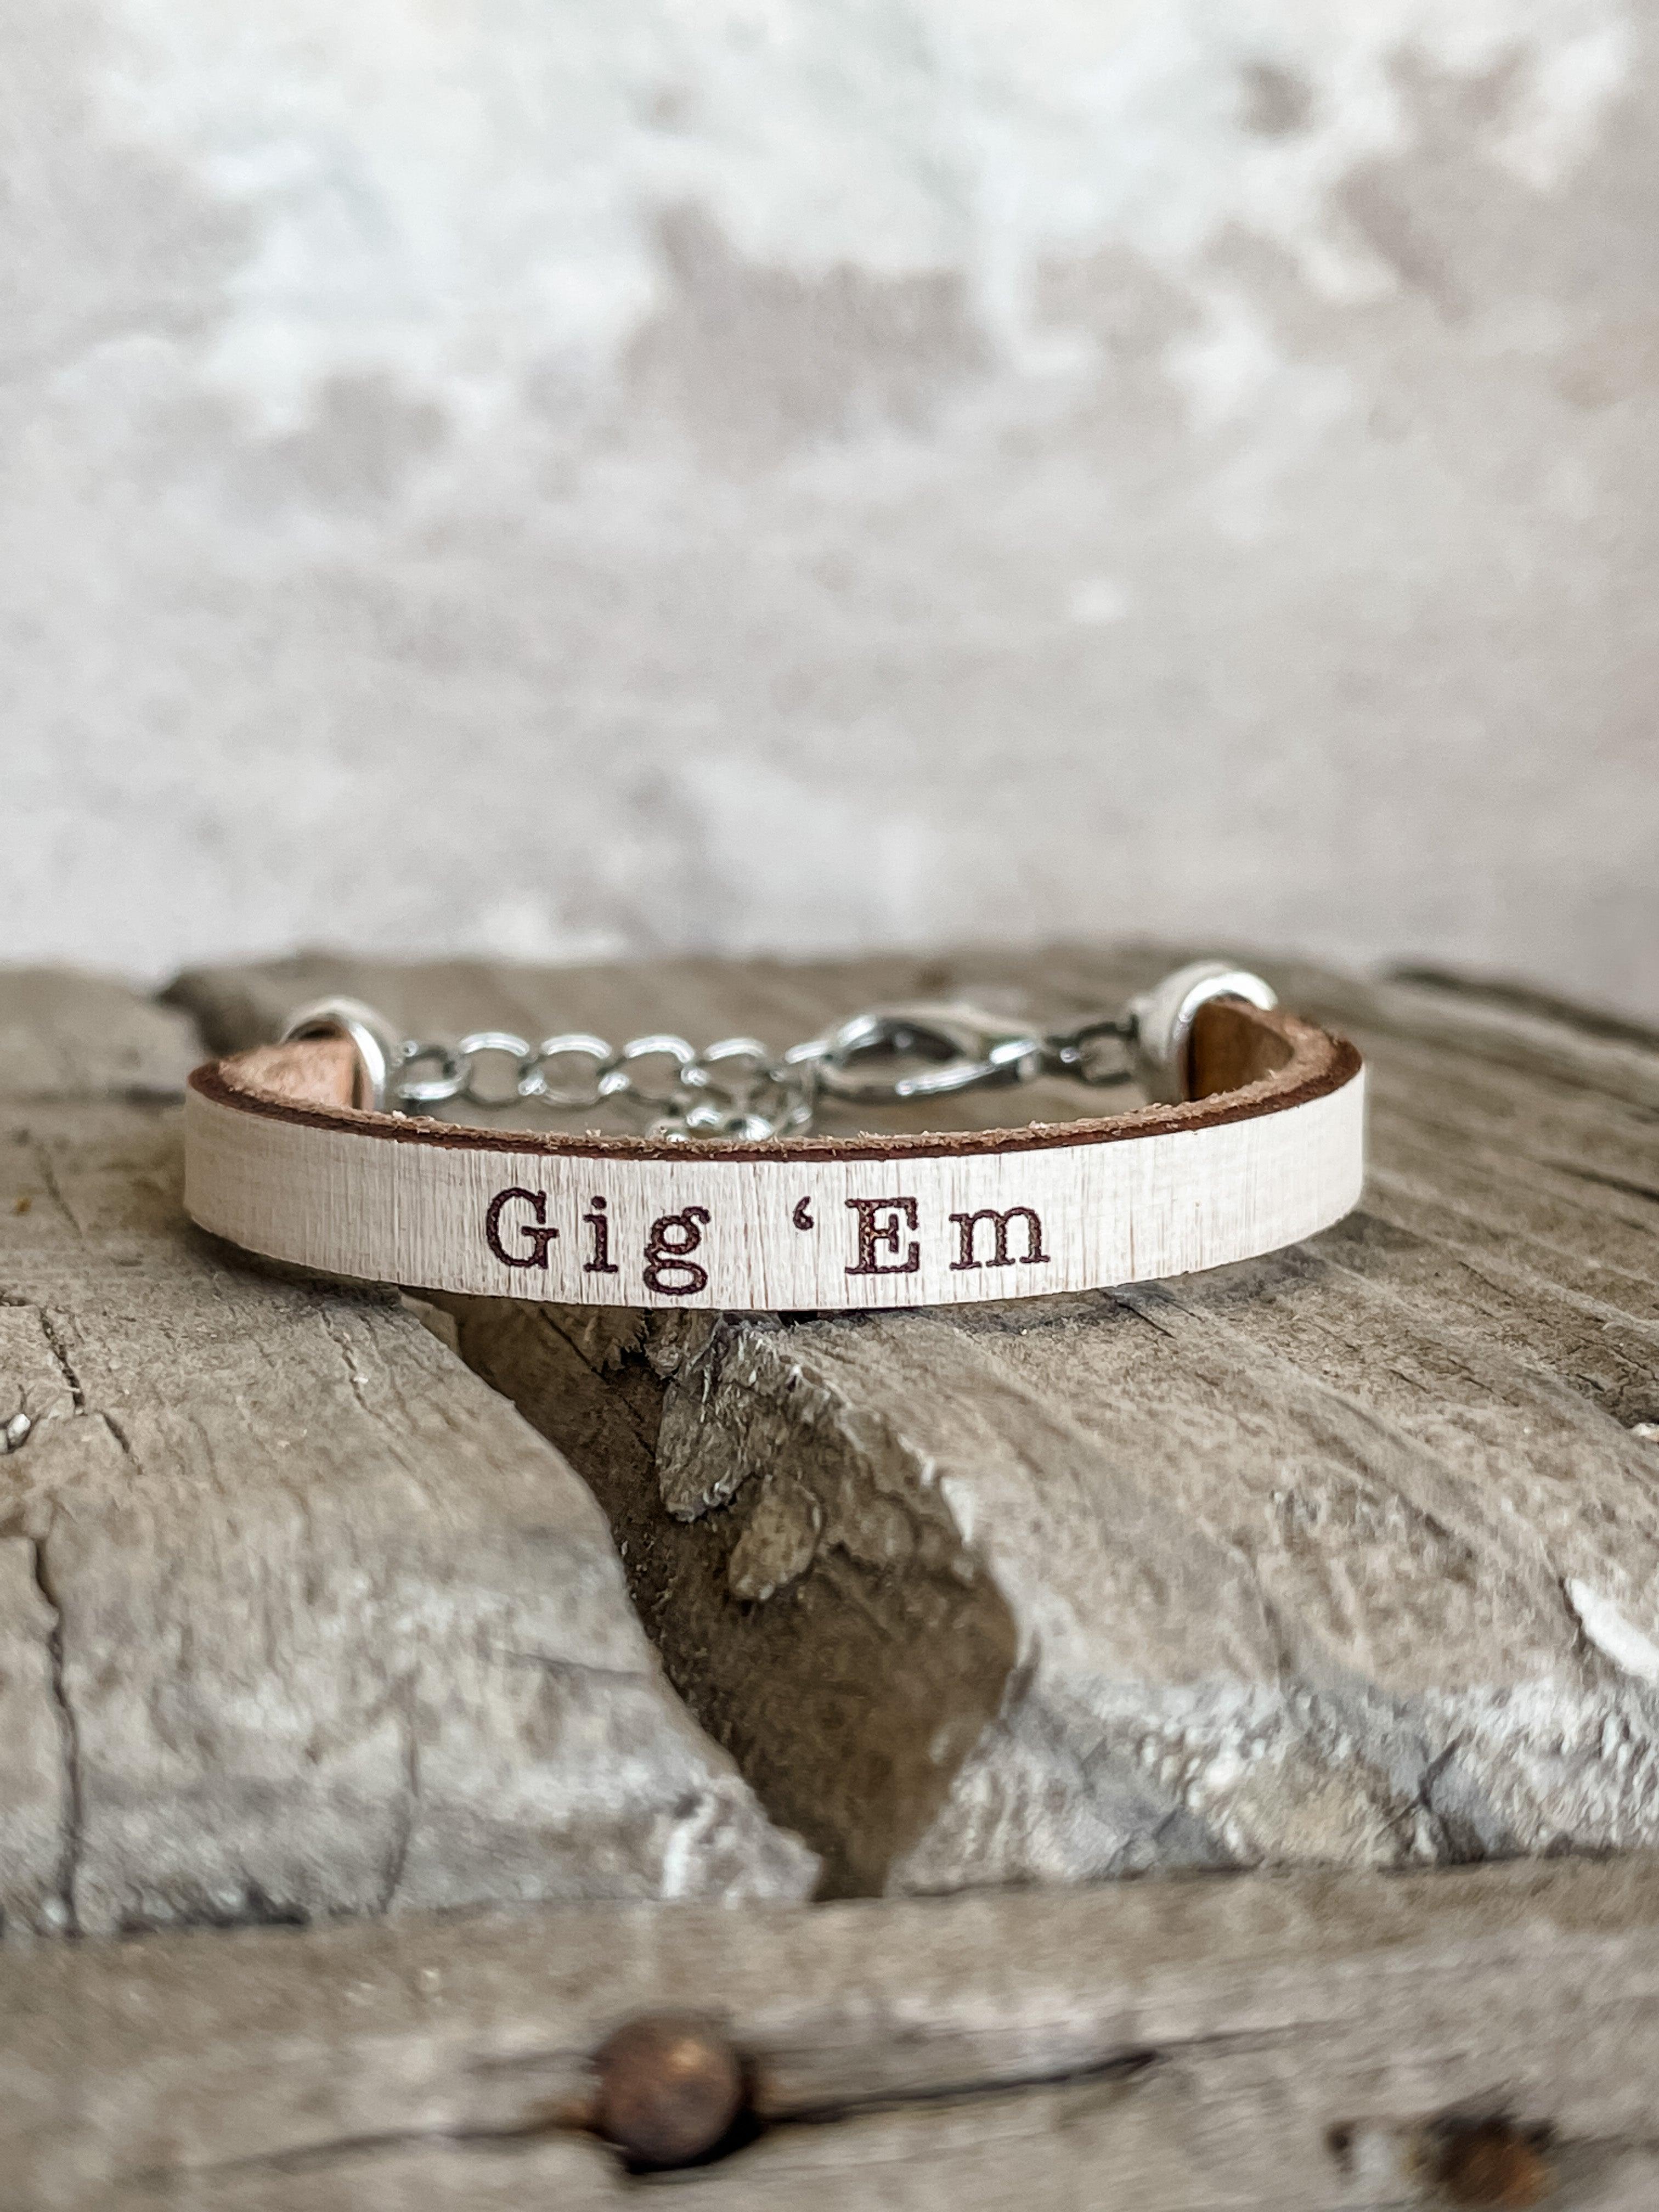 "Gig 'Em" Leather Bracelet - Vintage Soul